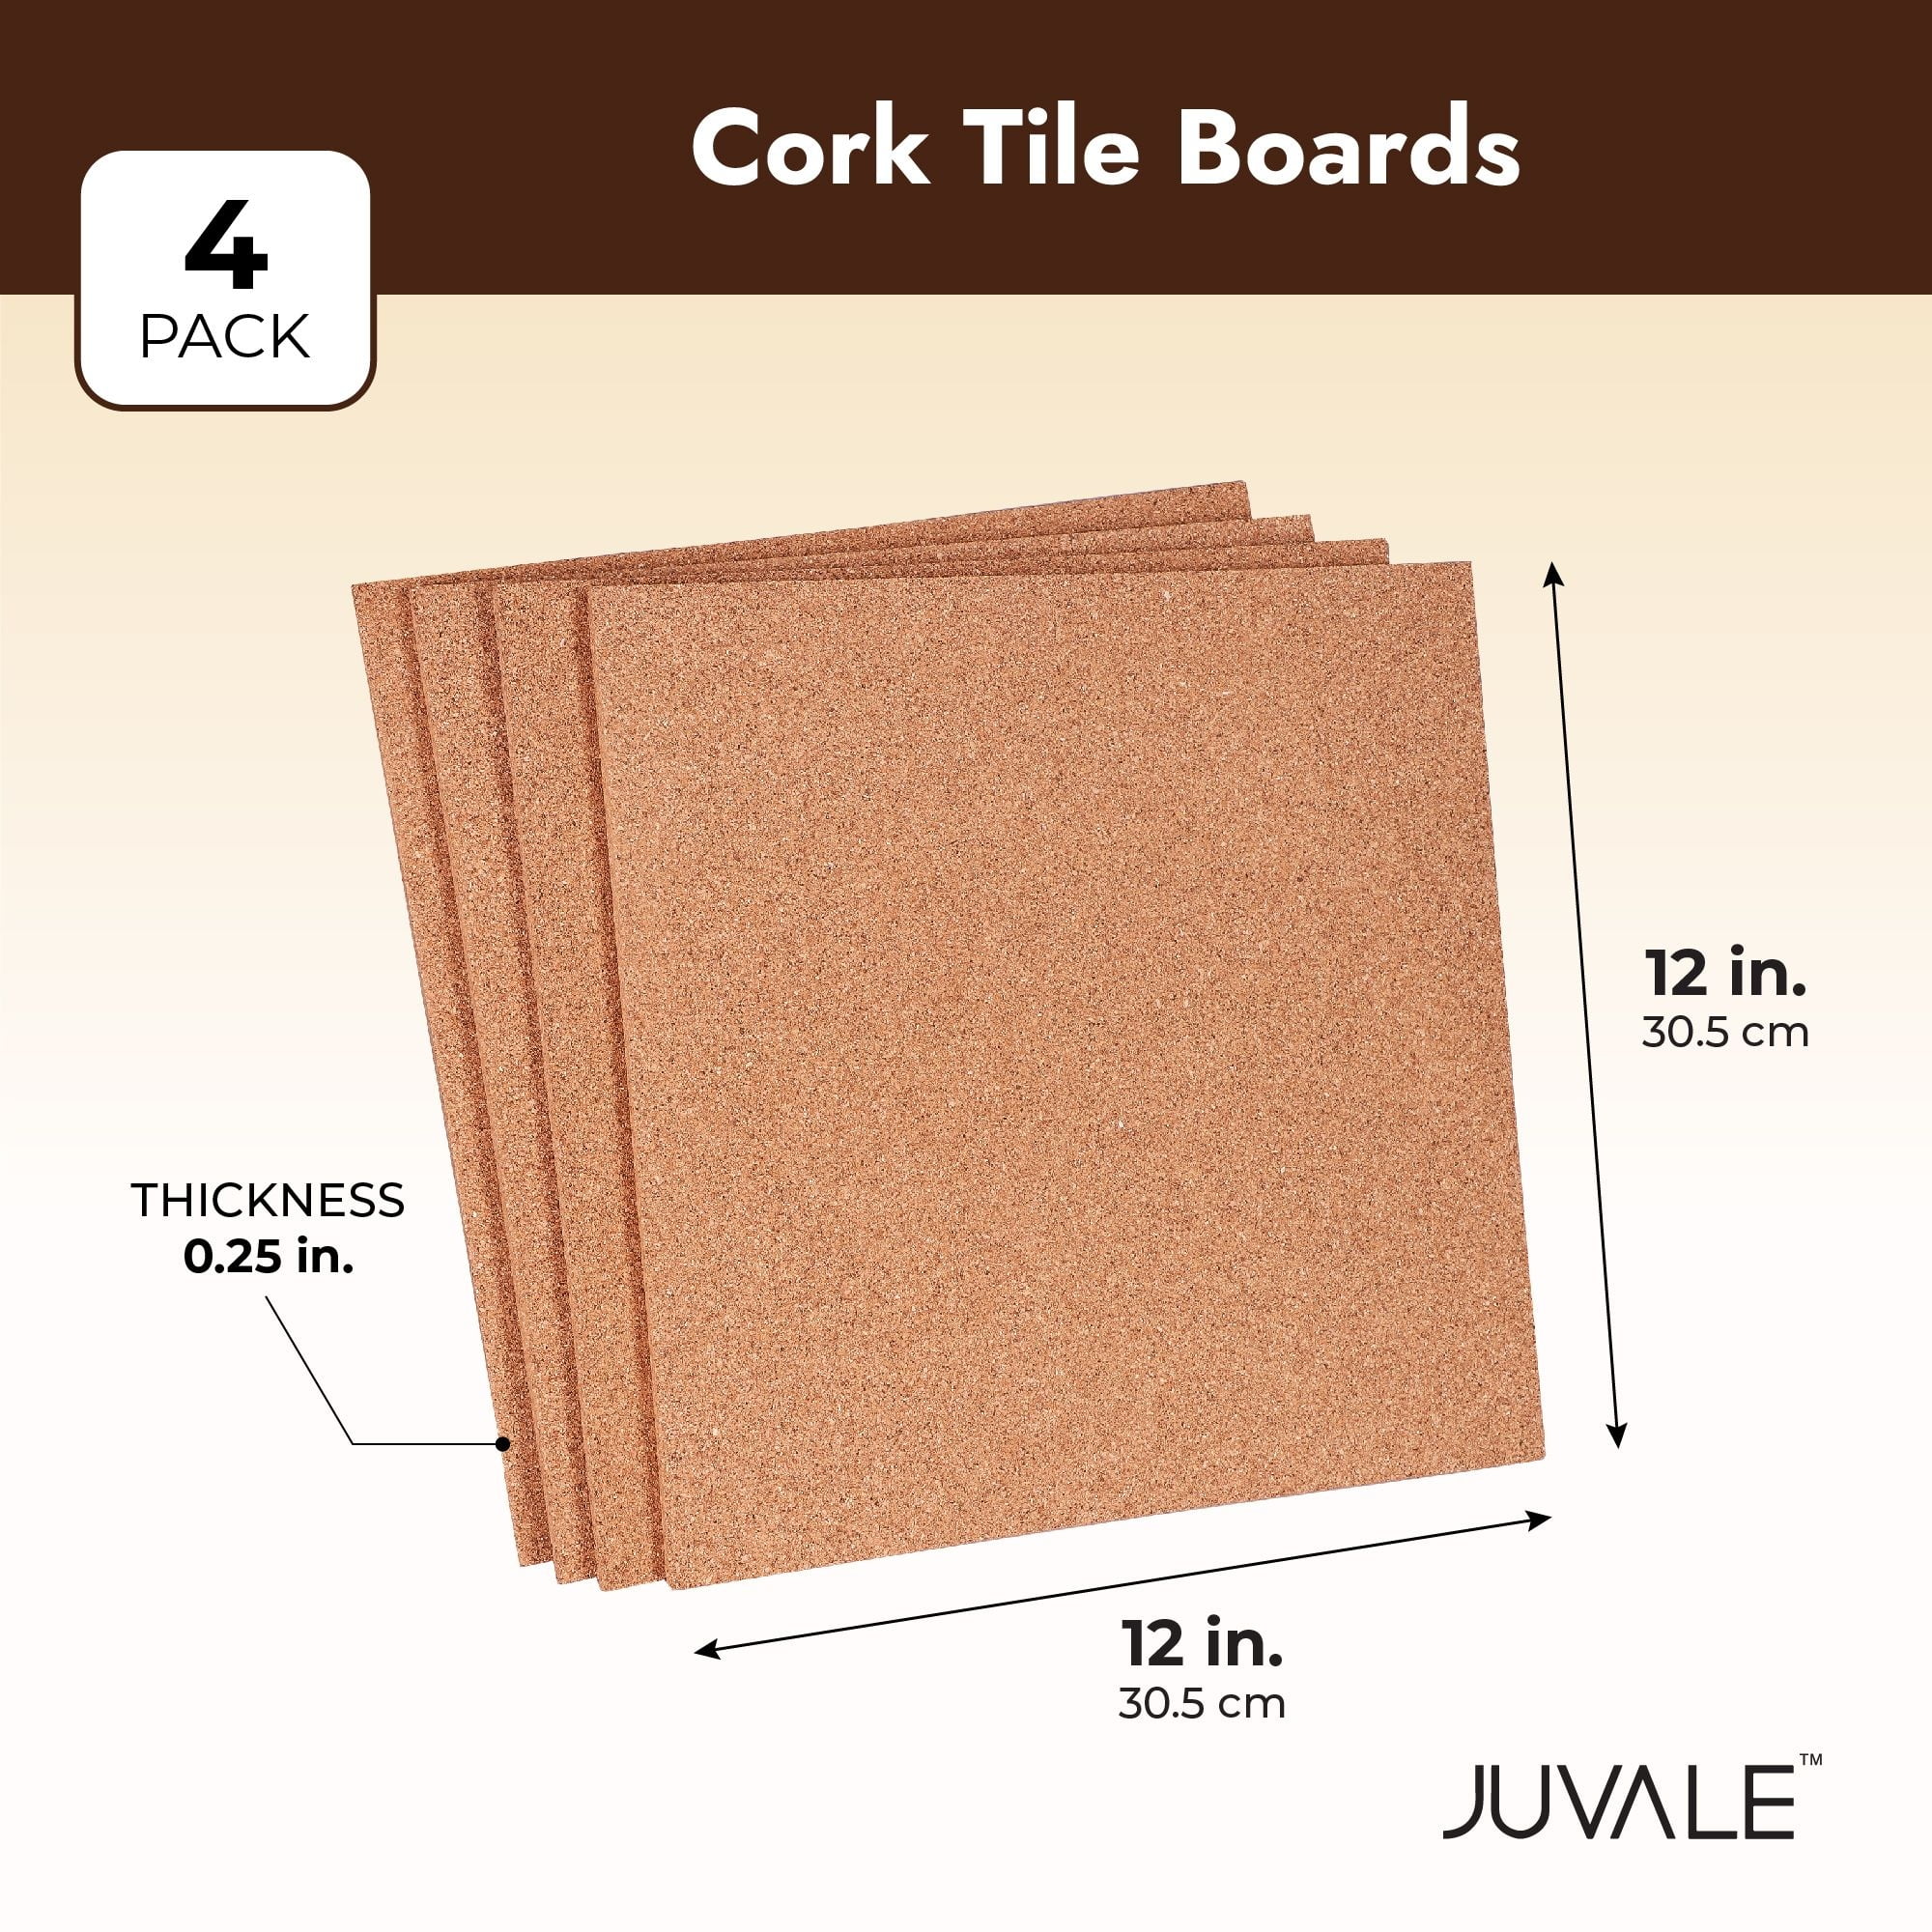 Quartet Cork Tiles Cork Board 12 x 12 Corkboard Wall Bulletin Boards pack  of 4